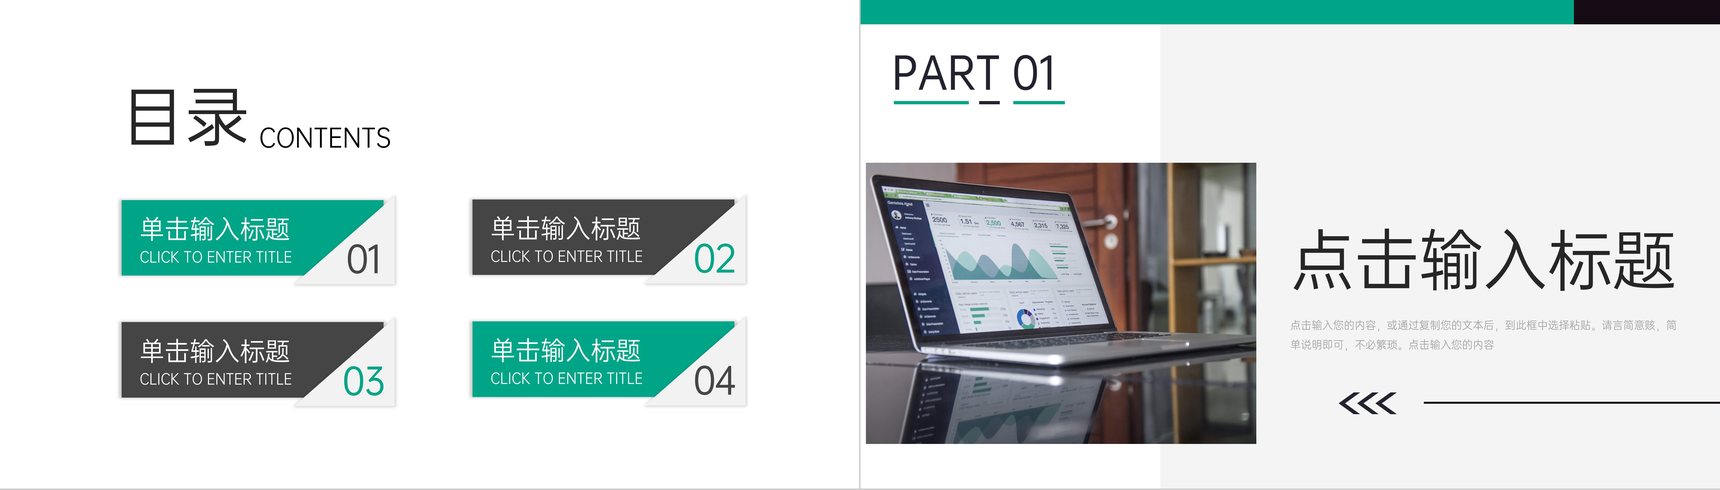 绿色商务项目数据复盘总结市场分析PPT模板-2